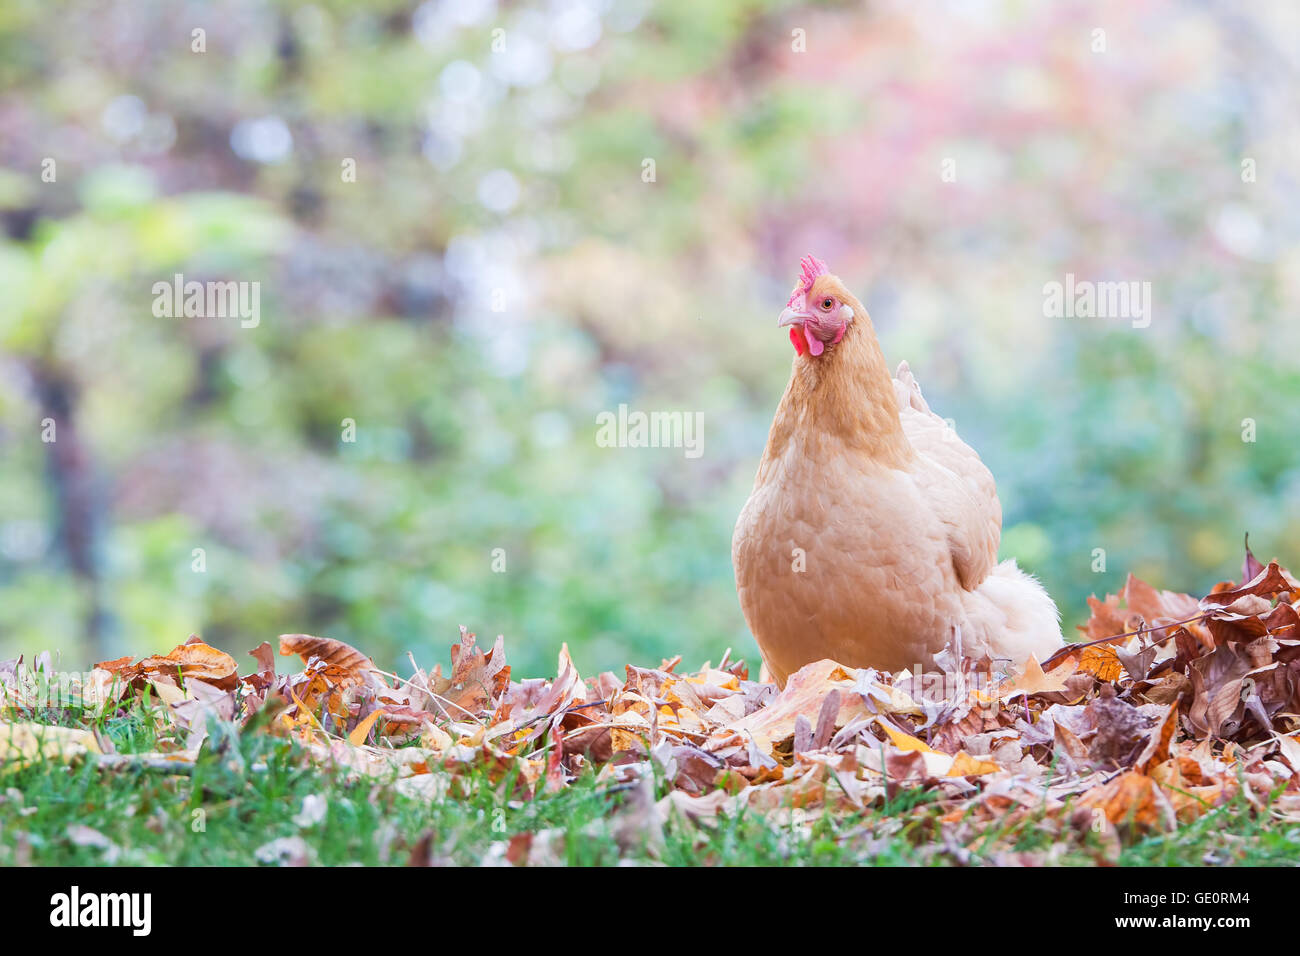 Un intervalo libre gallina en medio de los bosques y las hojas de otoño Foto de stock